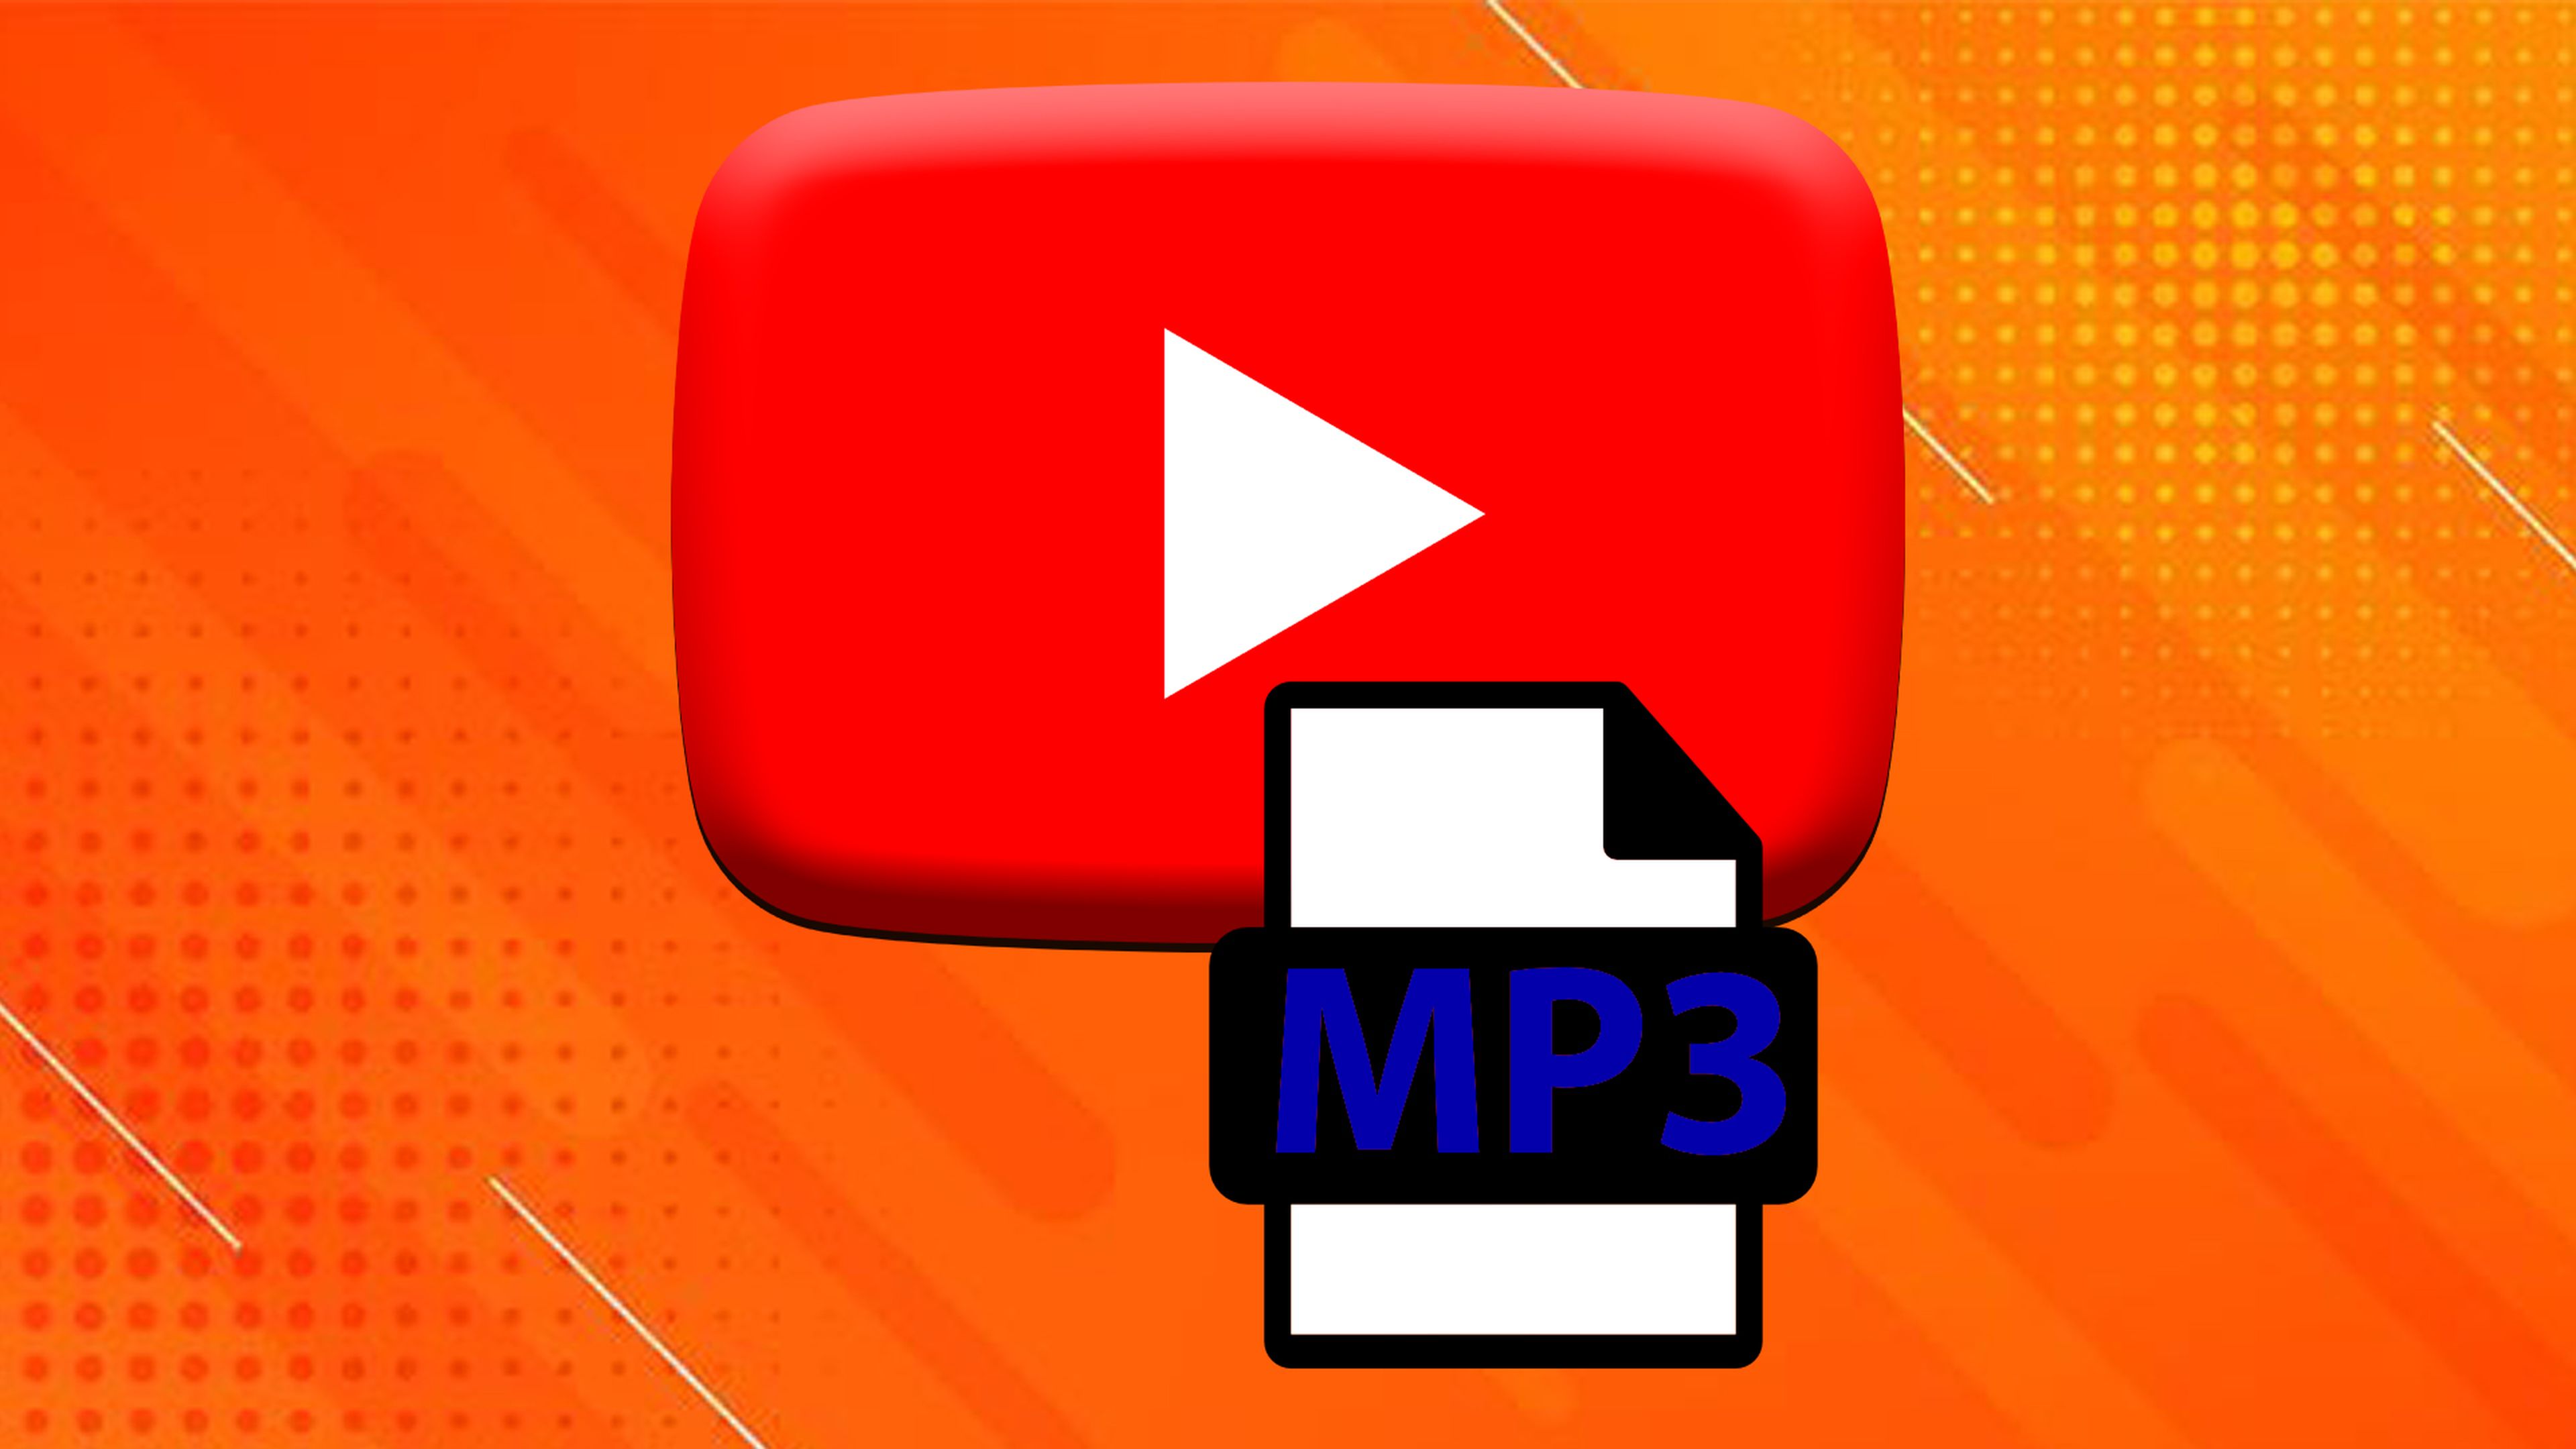 misil Ruina Diplomático Así puedes convertir vídeos de YouTube a MP3 | Computer Hoy